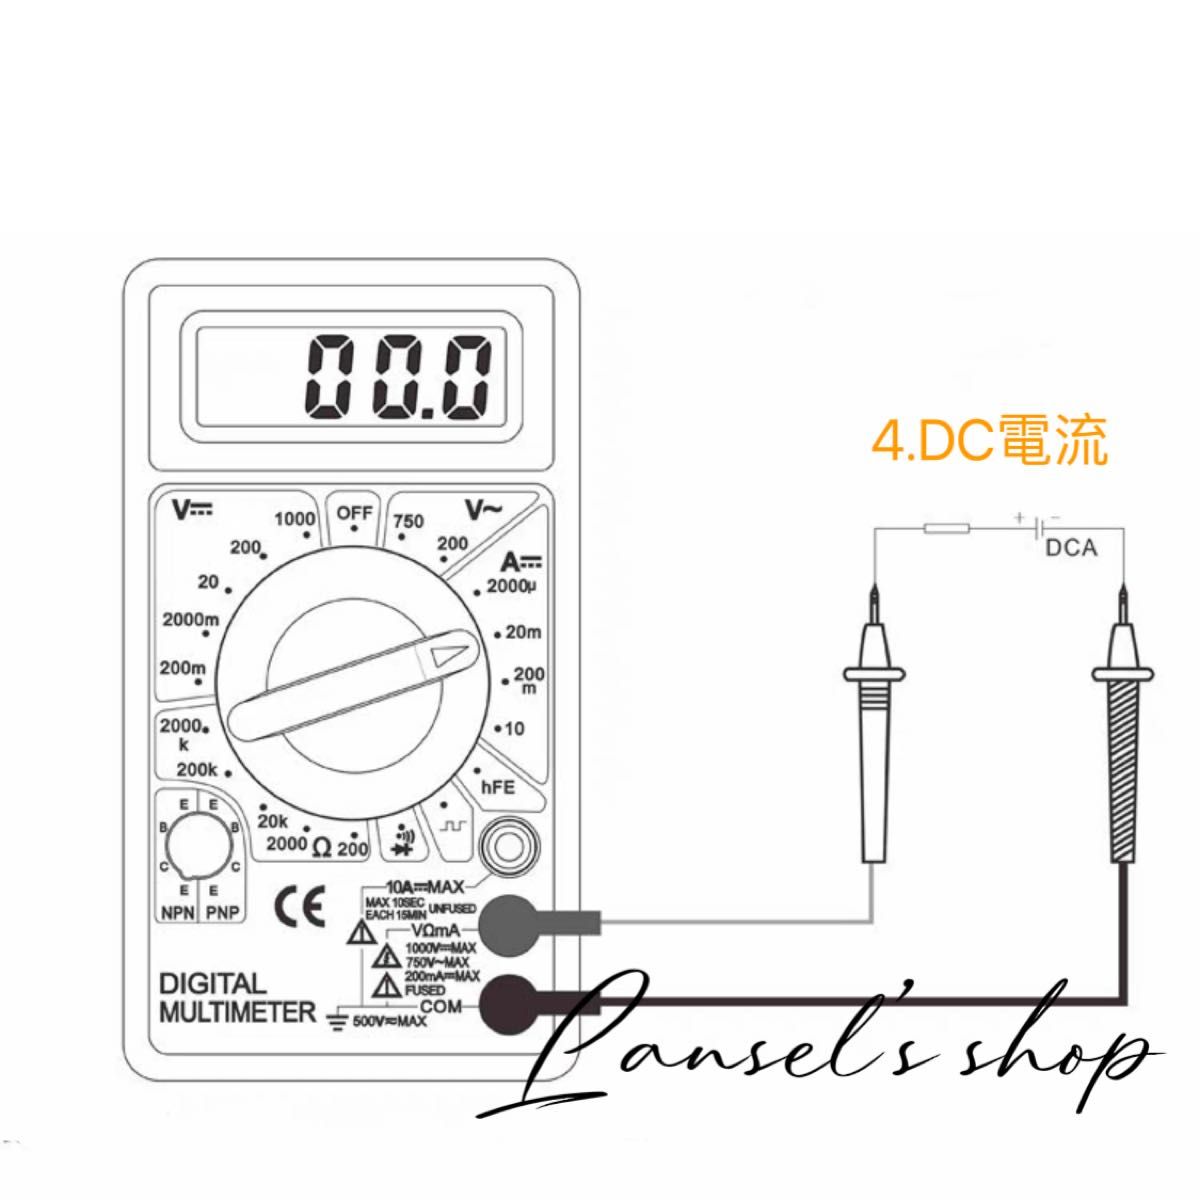 デジタルマルチメーター デジタルテスター 導通ブザー 電流 電圧 抵抗 計測 DT-830D LCD AC/DC 高精度 &d